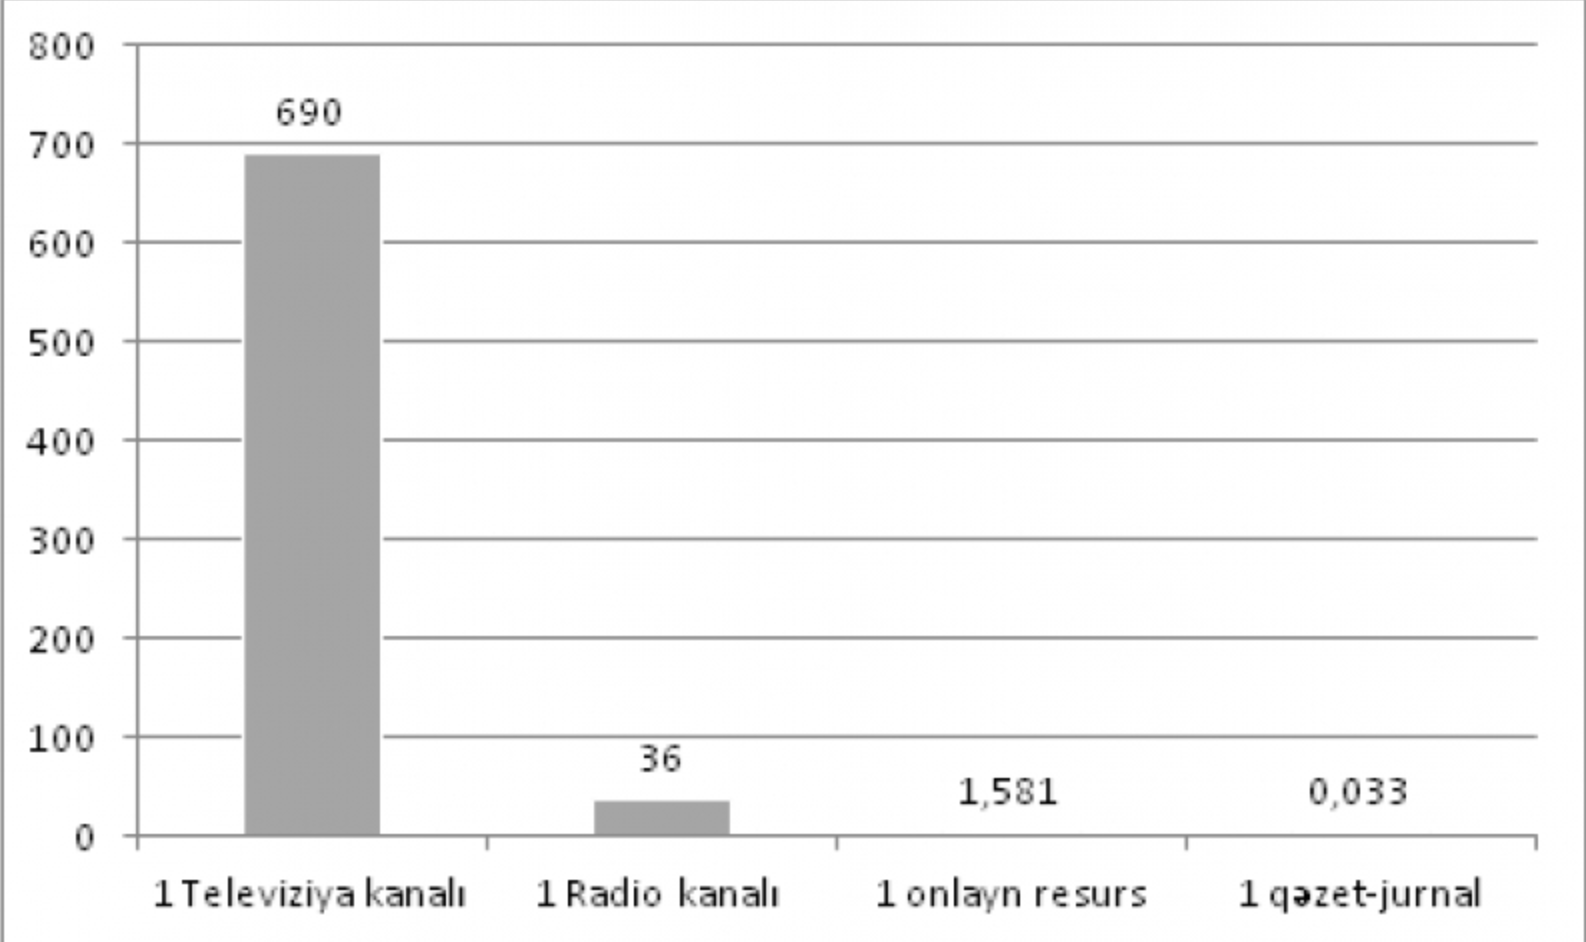 Azərbaycanda mediareklam bazarının strukturu (%)